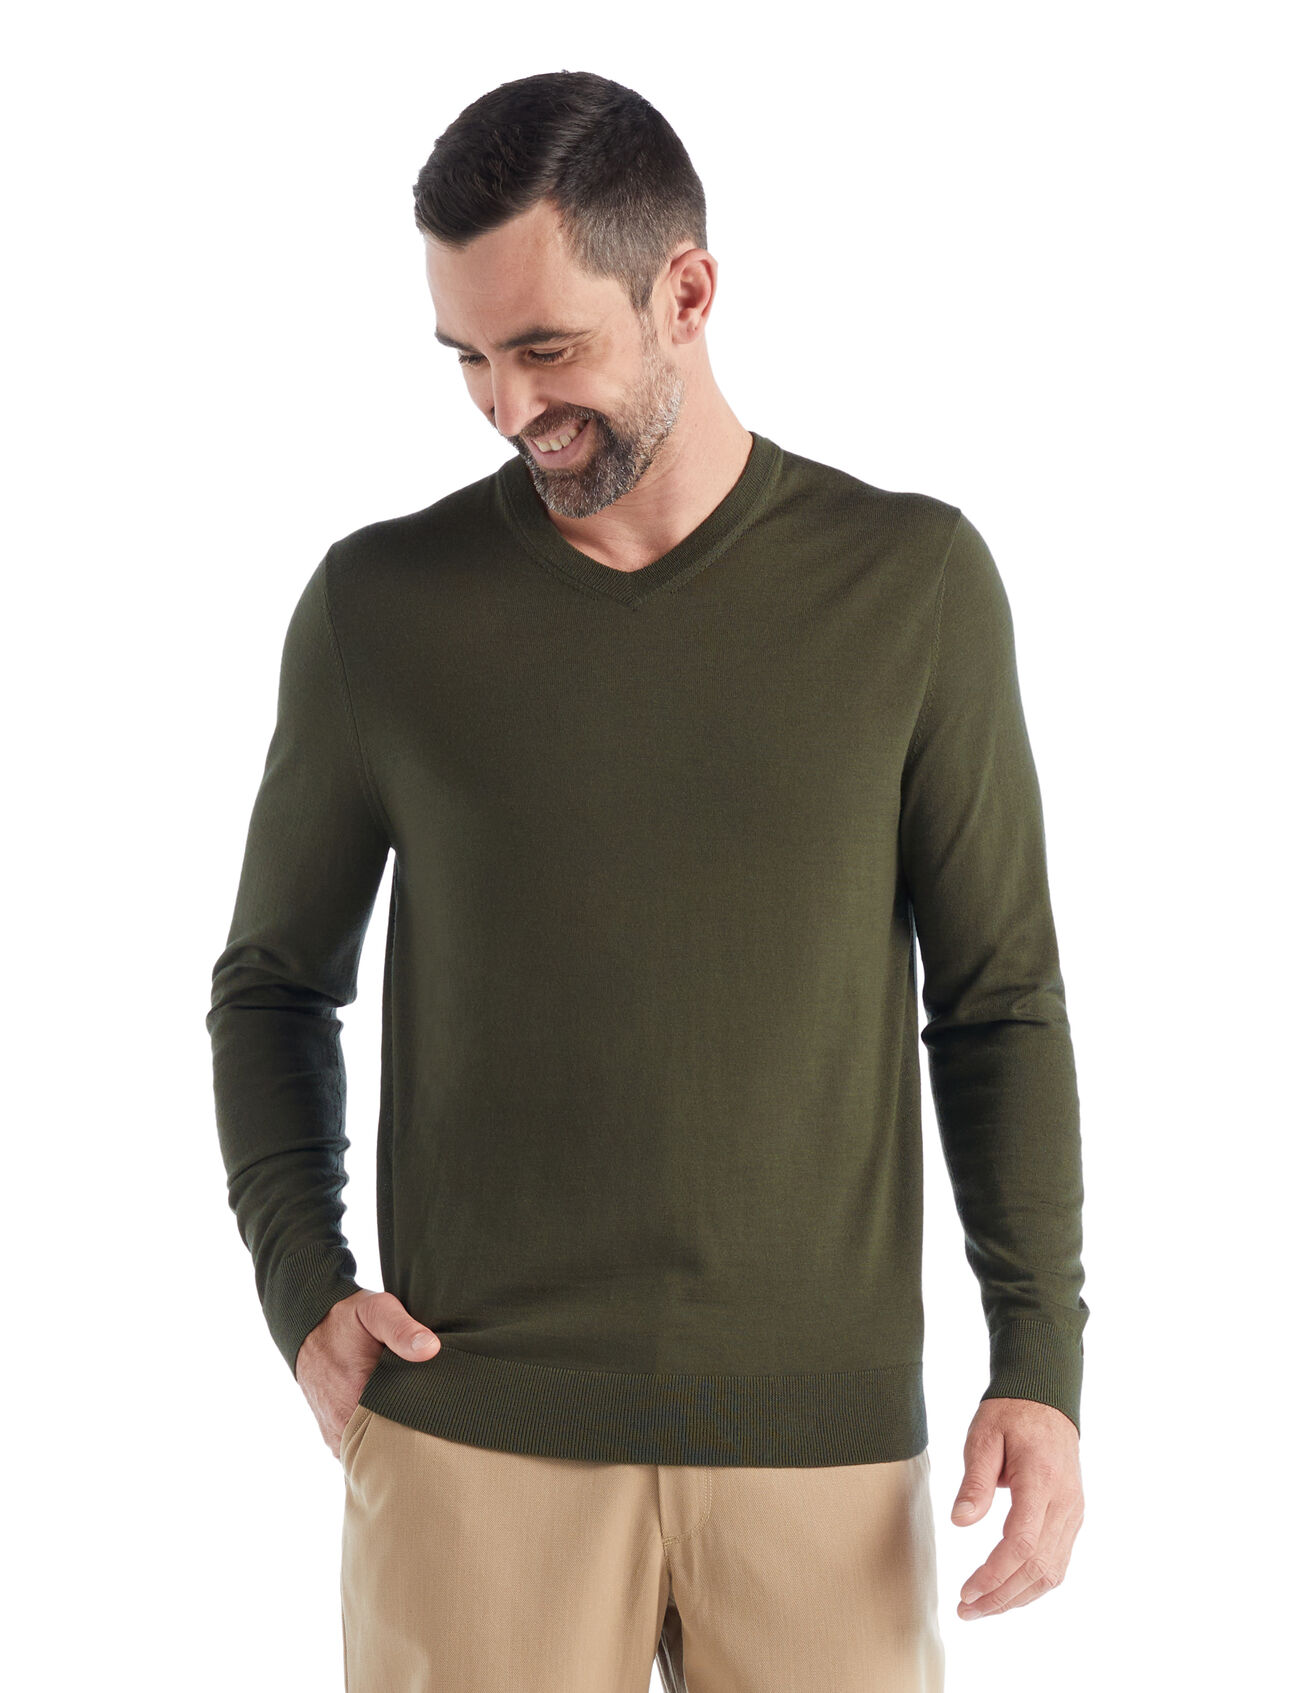 Merino Wilcox Sweater  Herren Ein klassischer Pullover für jeden Tag aus feinster Merinowolle, der Wilcox Sweater mit V-Ausschnitt verwöhnt mit einem unvergleichlich weichen Tragegefühl und ist der perfekte Begleiter an Tagen, an denen du einen zusätzlichen leichten Layer brauchst.